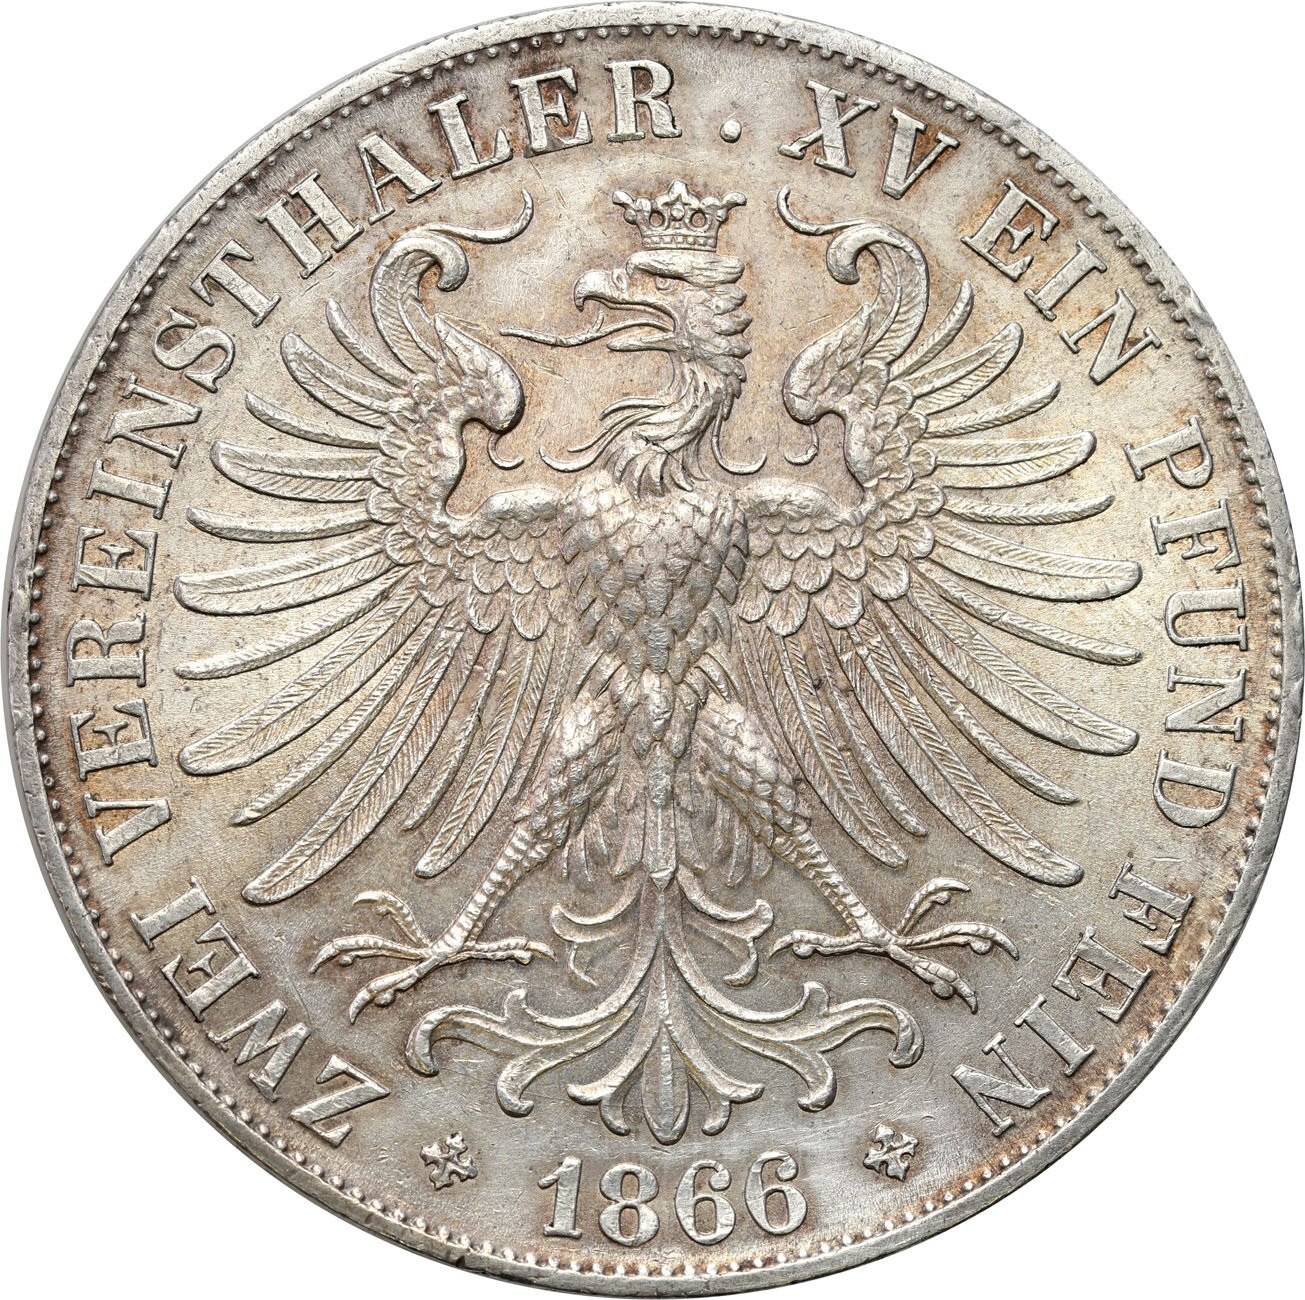 Niemcy. Dwutalar (2 talary) 1866, Frankfurt